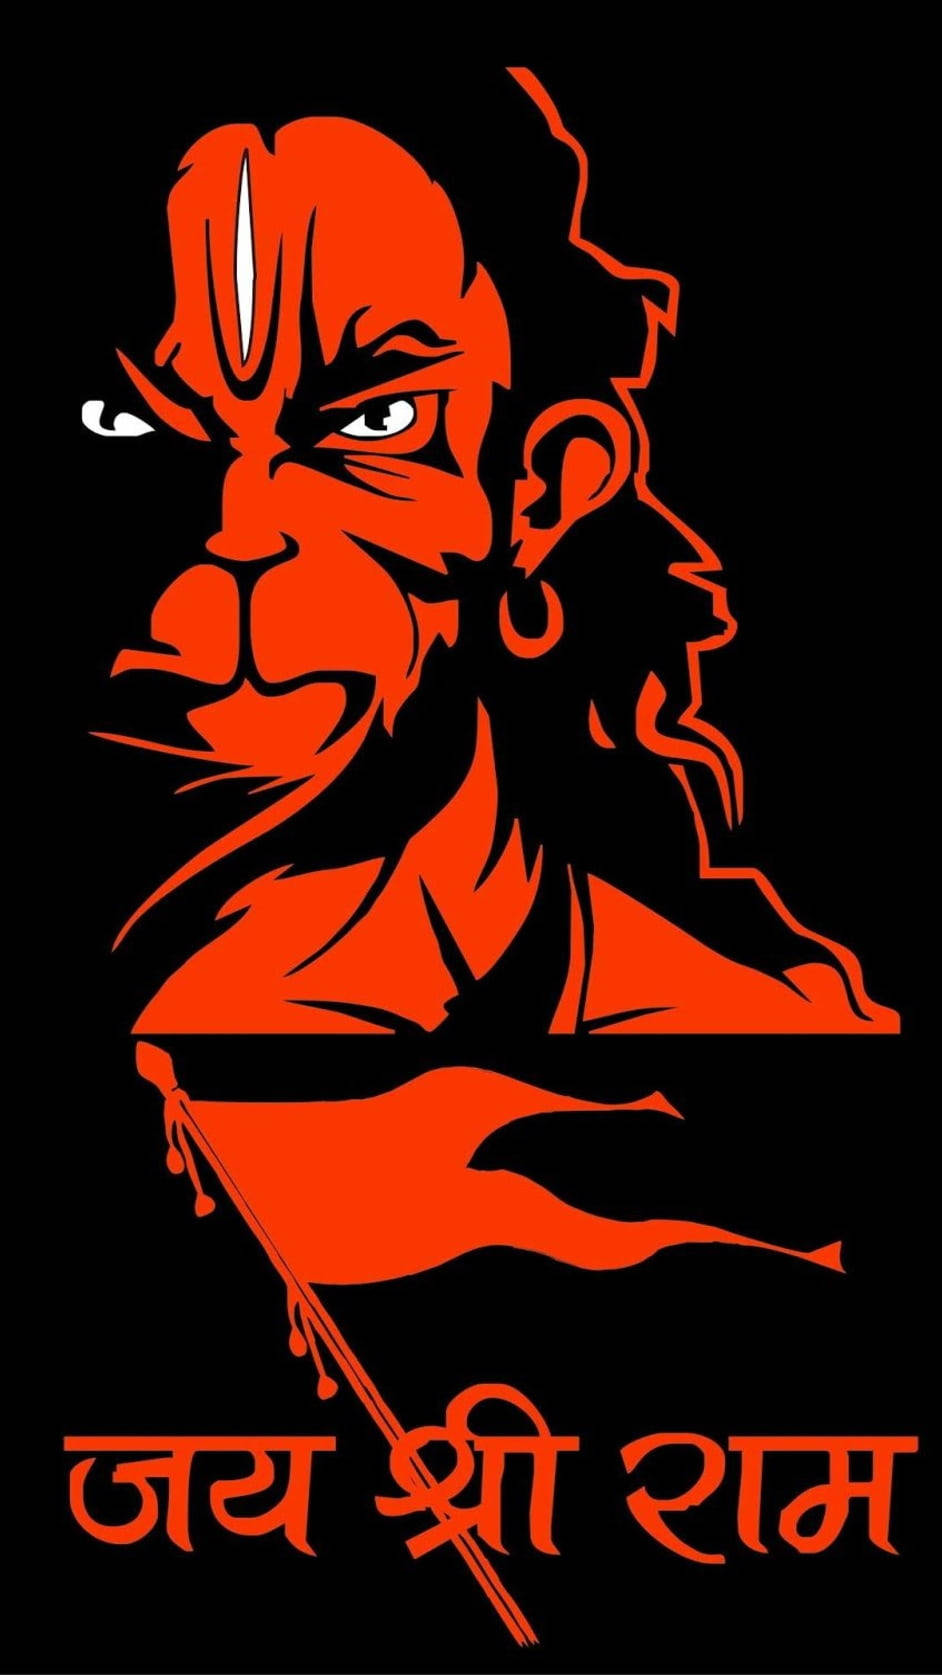 Download Jai Shree Ram Hd Angry Hanuman Wallpaper | Wallpapers.com